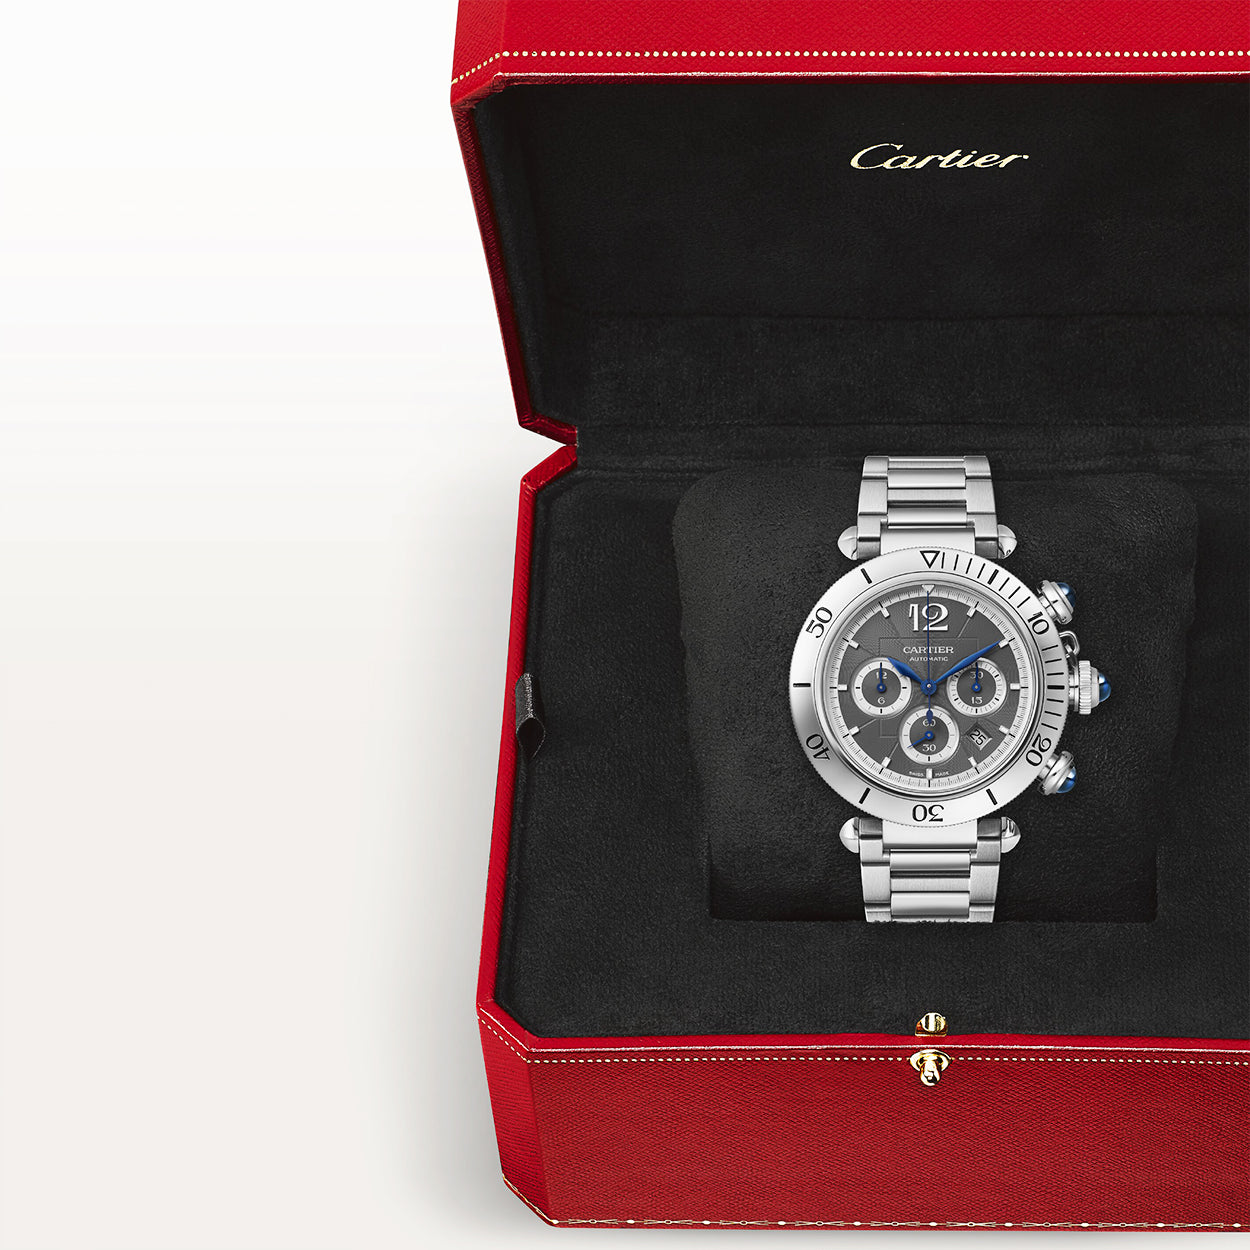 Pasha de Cartier 41mm Grey Dial Bracelet/Leather Strap Chronograph Watch